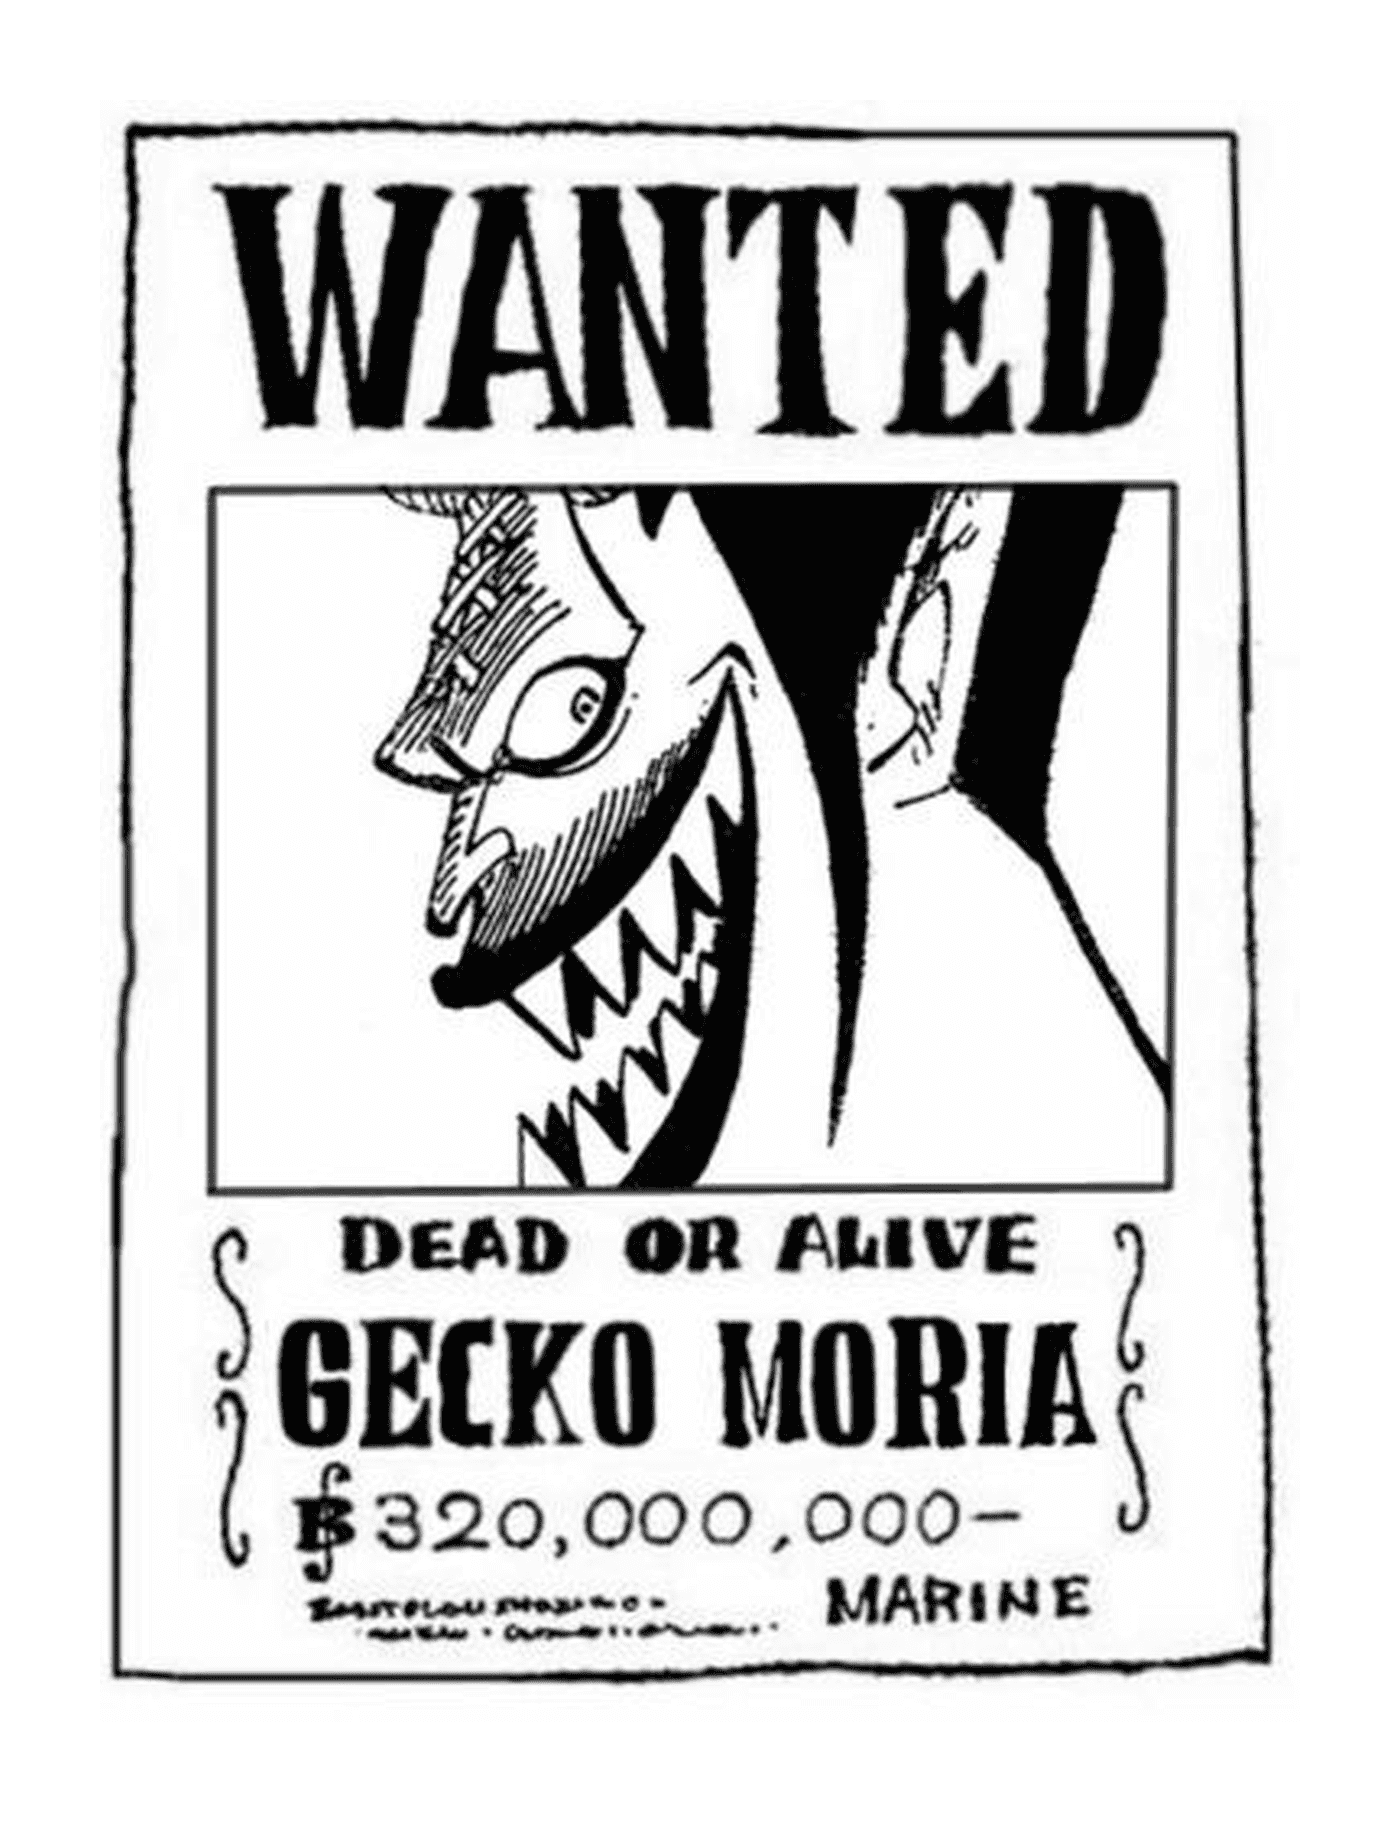  Se busca a Gecko Moria, vivo o muerto 